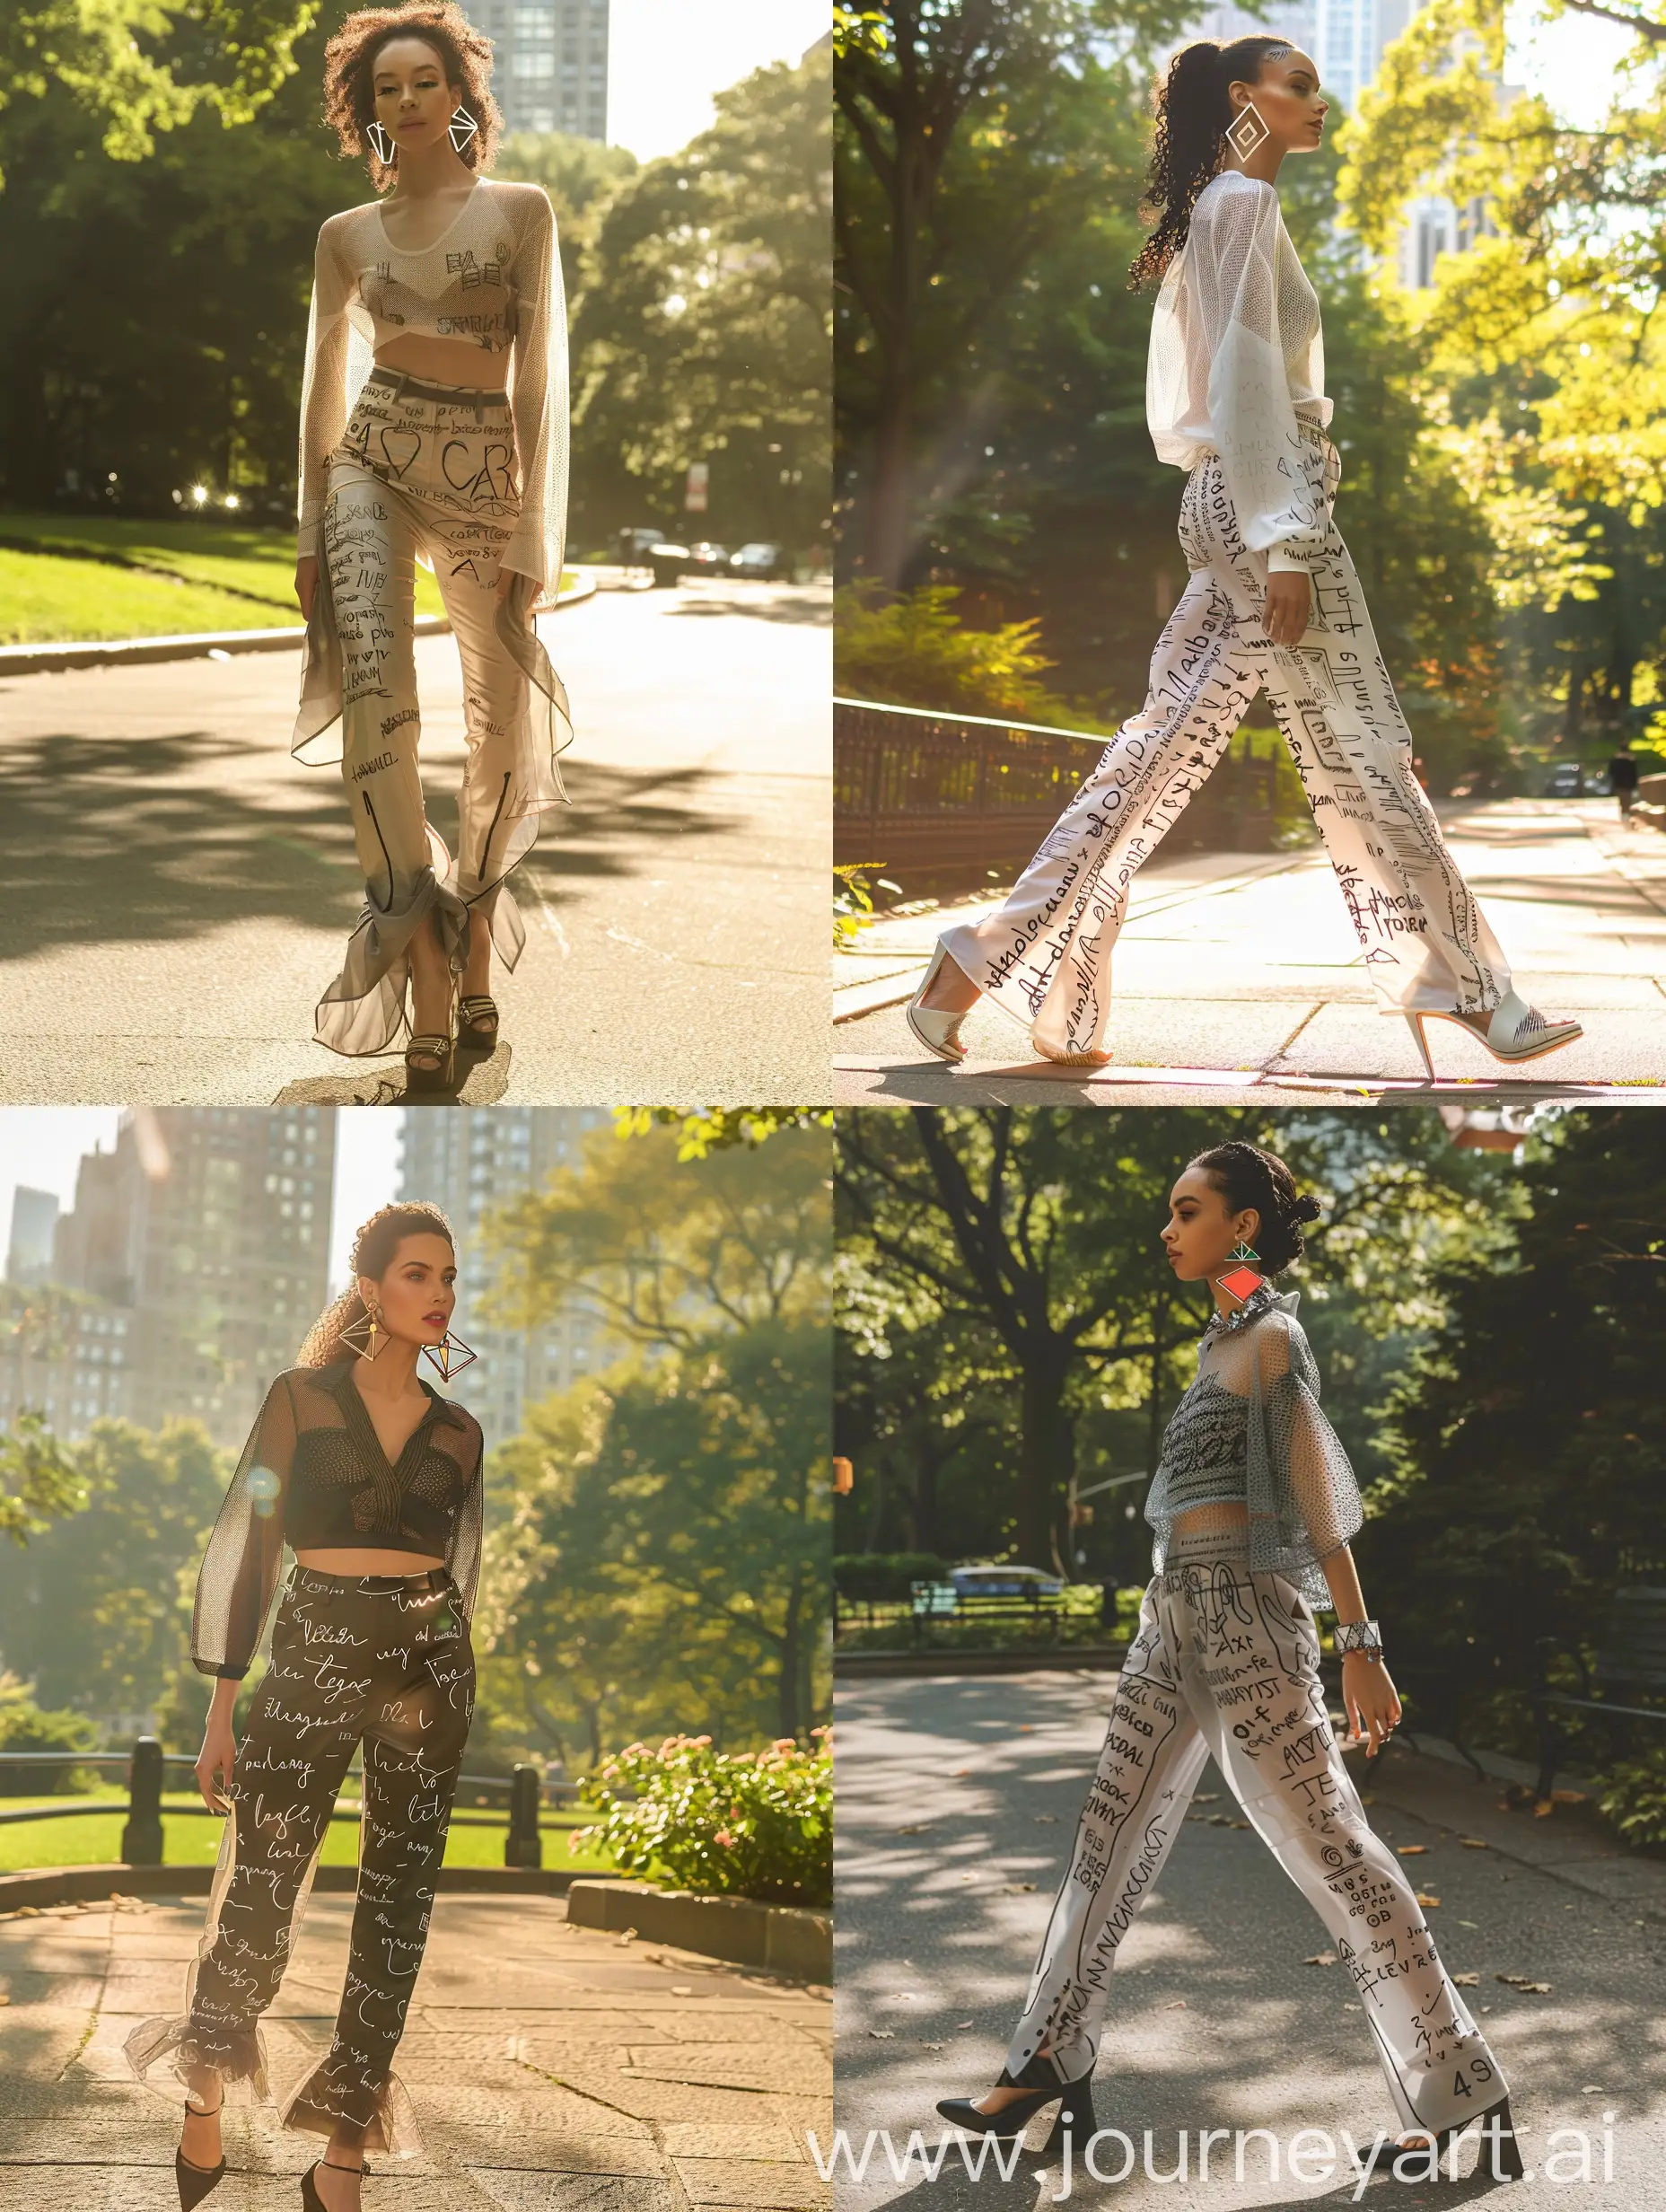 crea modella che sfila nel Central Park, a figura intera, indossa maglia fatta di piccole reti, pantaloni sportivi con scritte  disegnate sui pantalon, indossa orecchini pop geometrici, ha scarpe alte, realistica, alta definizione, c'è la luce del sole, alta qualità, dettagliata, foto vera